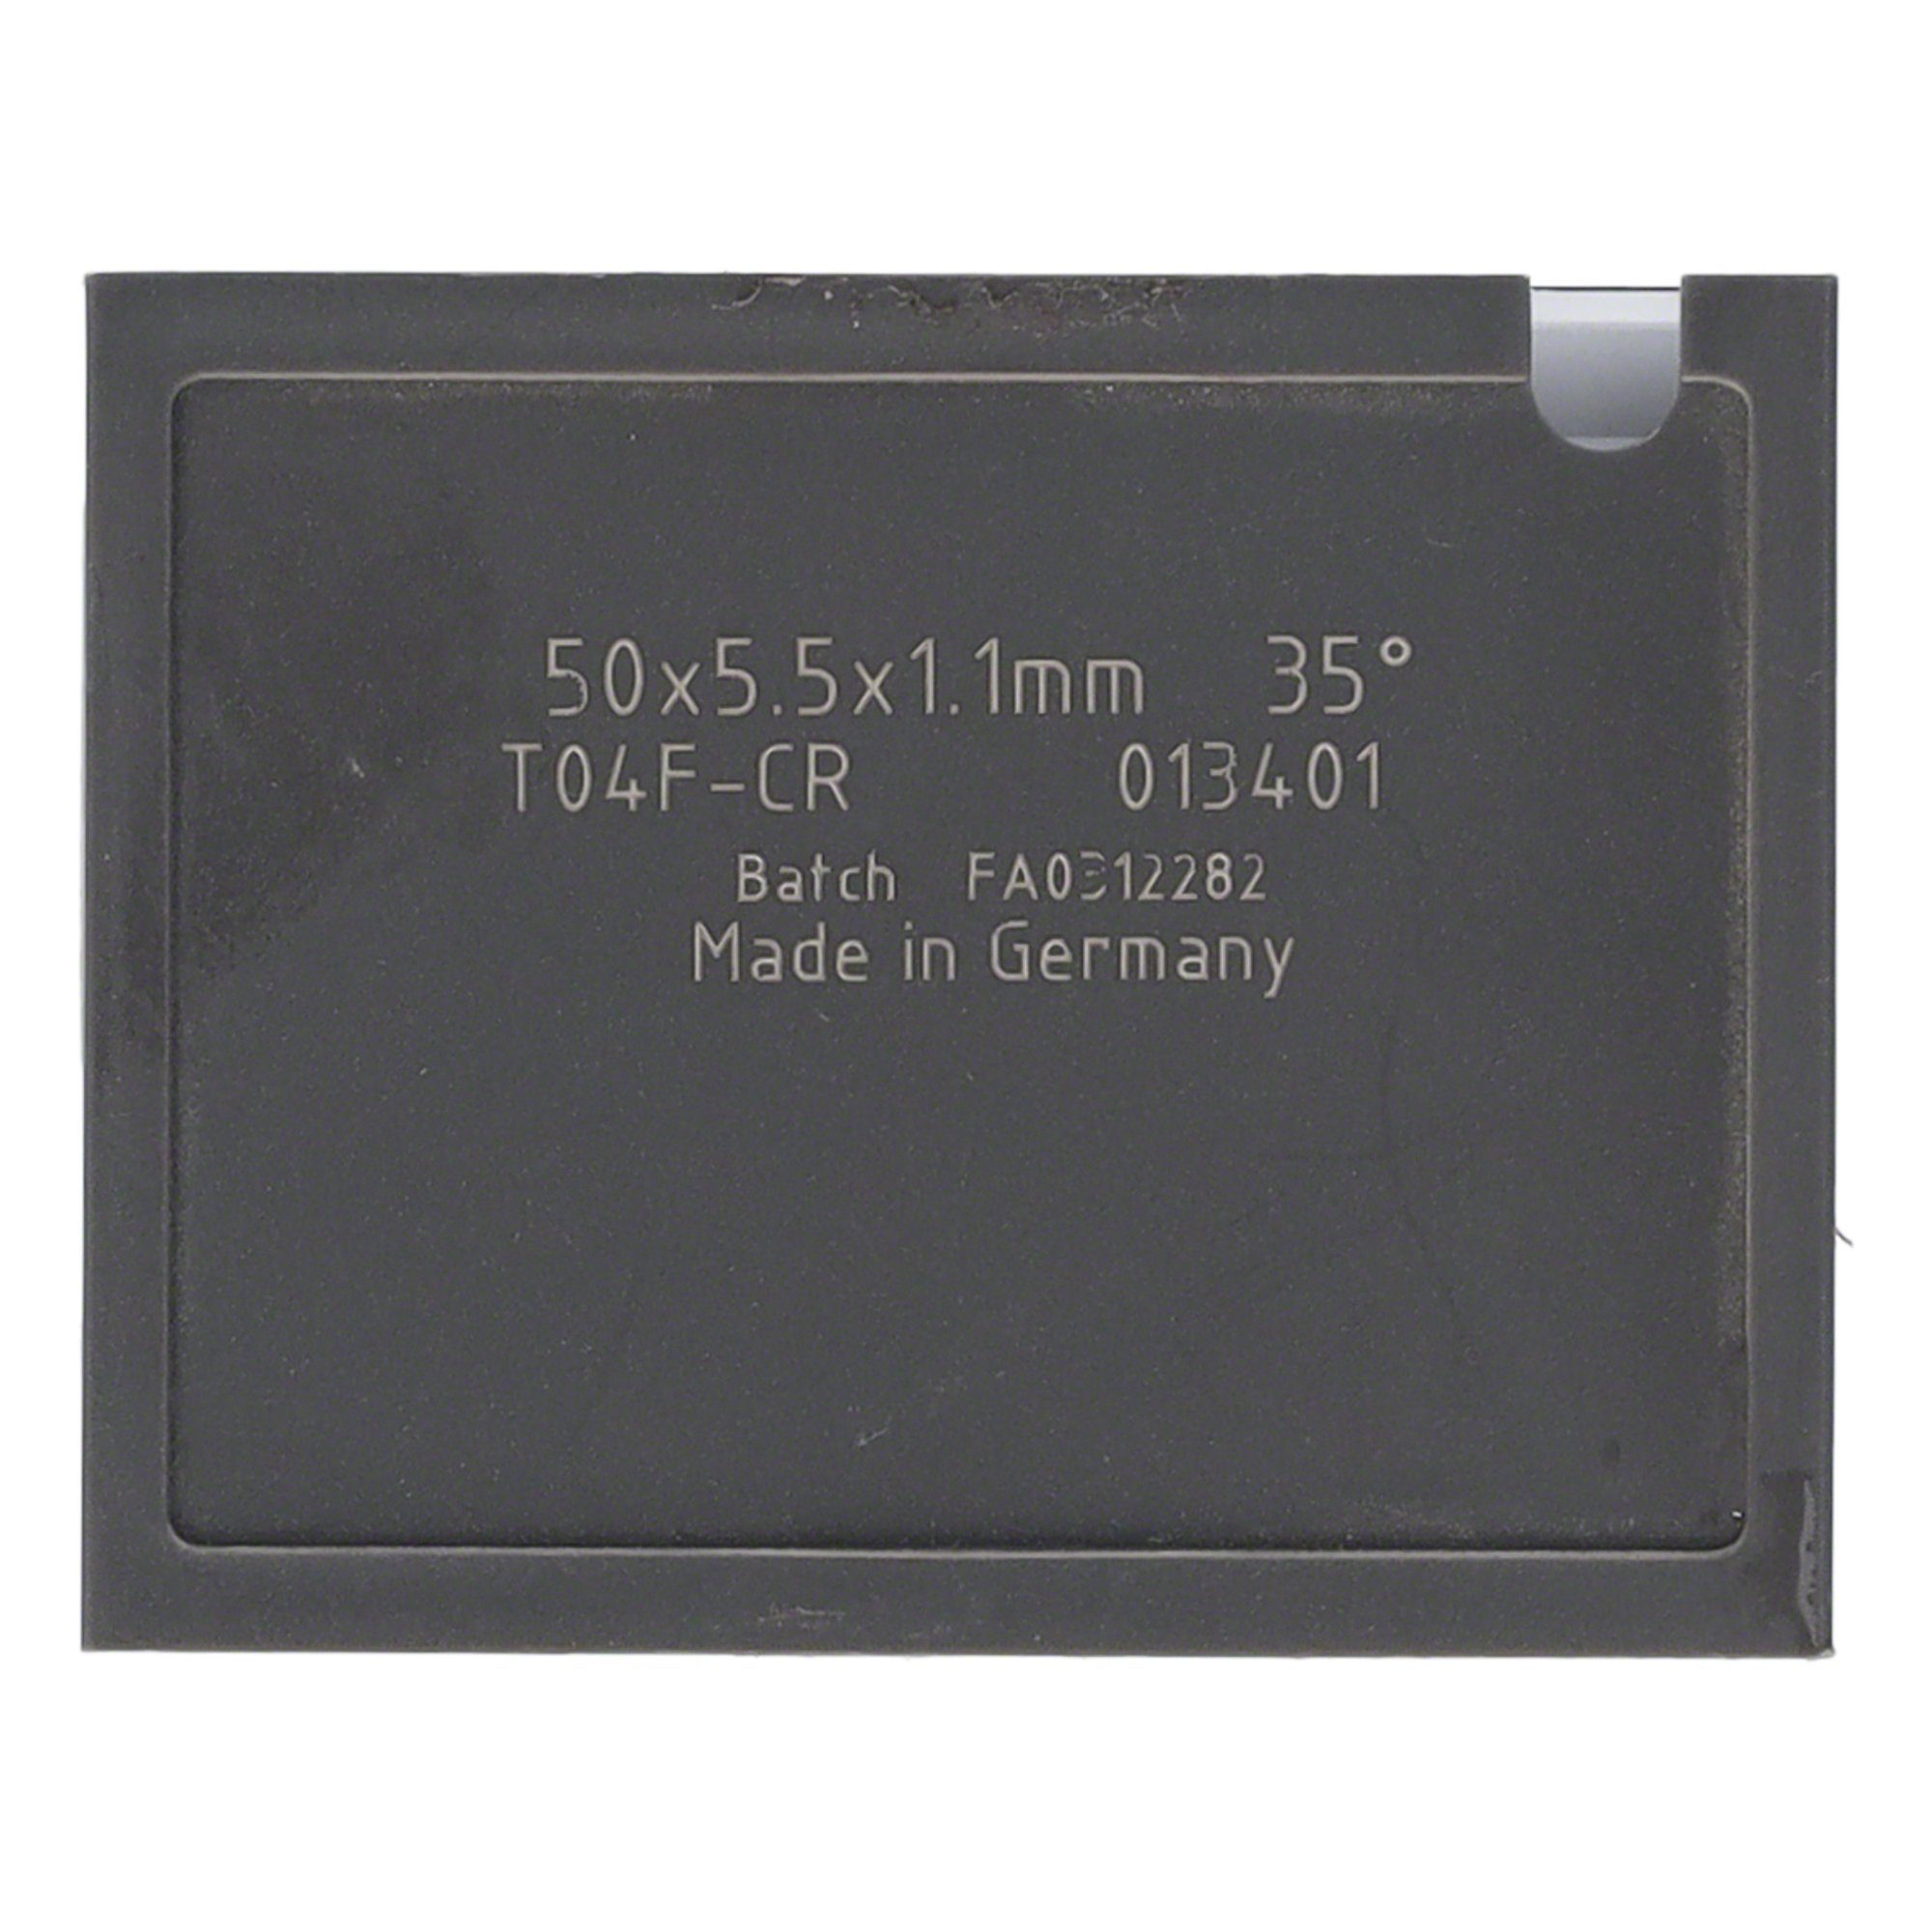 T04F 30x5,5x1,1mm - 10 Mini-Wendeplatte 38 Wendeplattenfräser Brust Tigra und Quernut St.